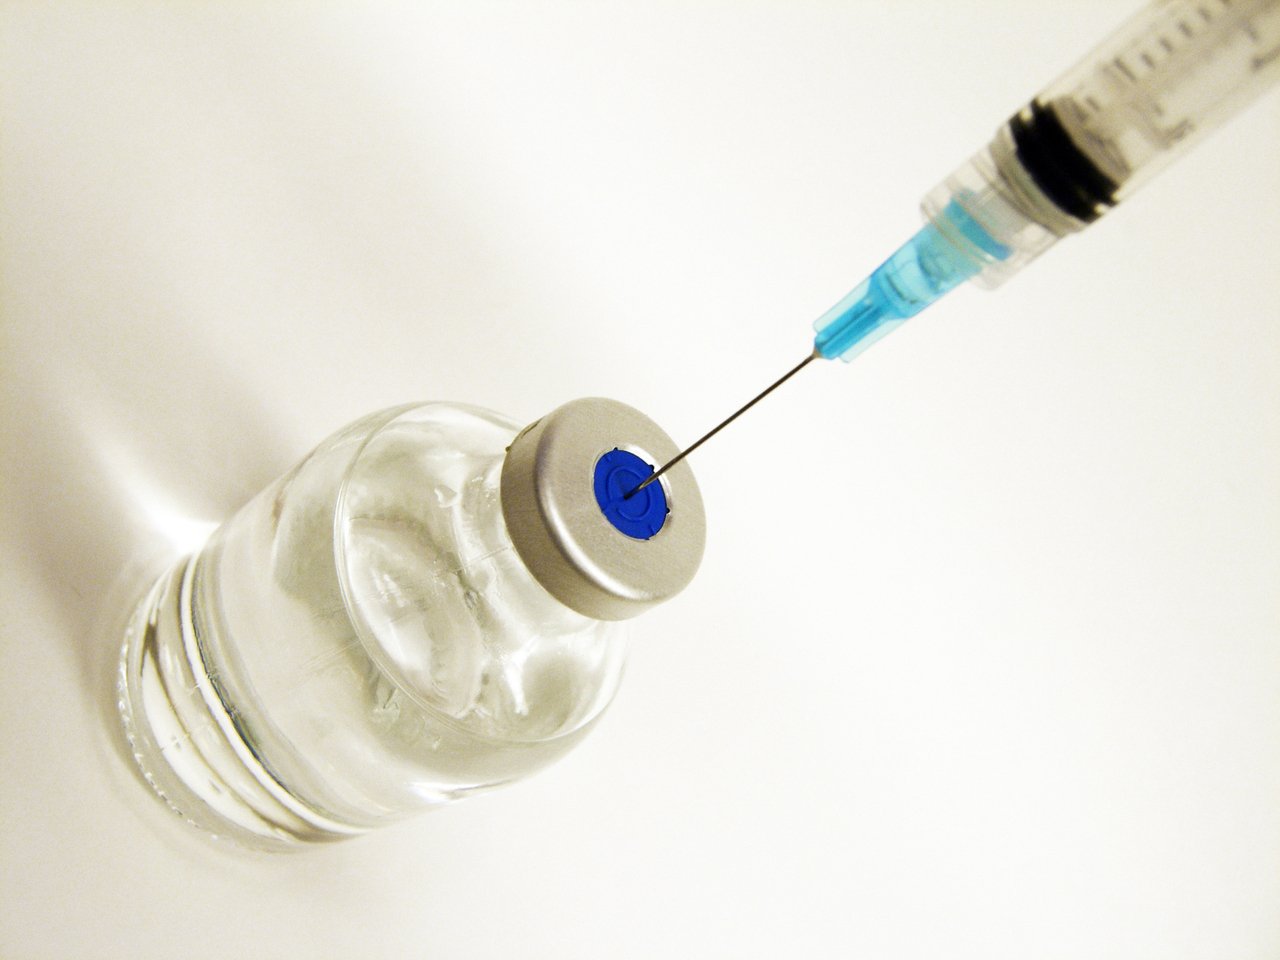 Când vor fi furnizate potențialele vaccinuri împotriva Covid-19 către țările din UE